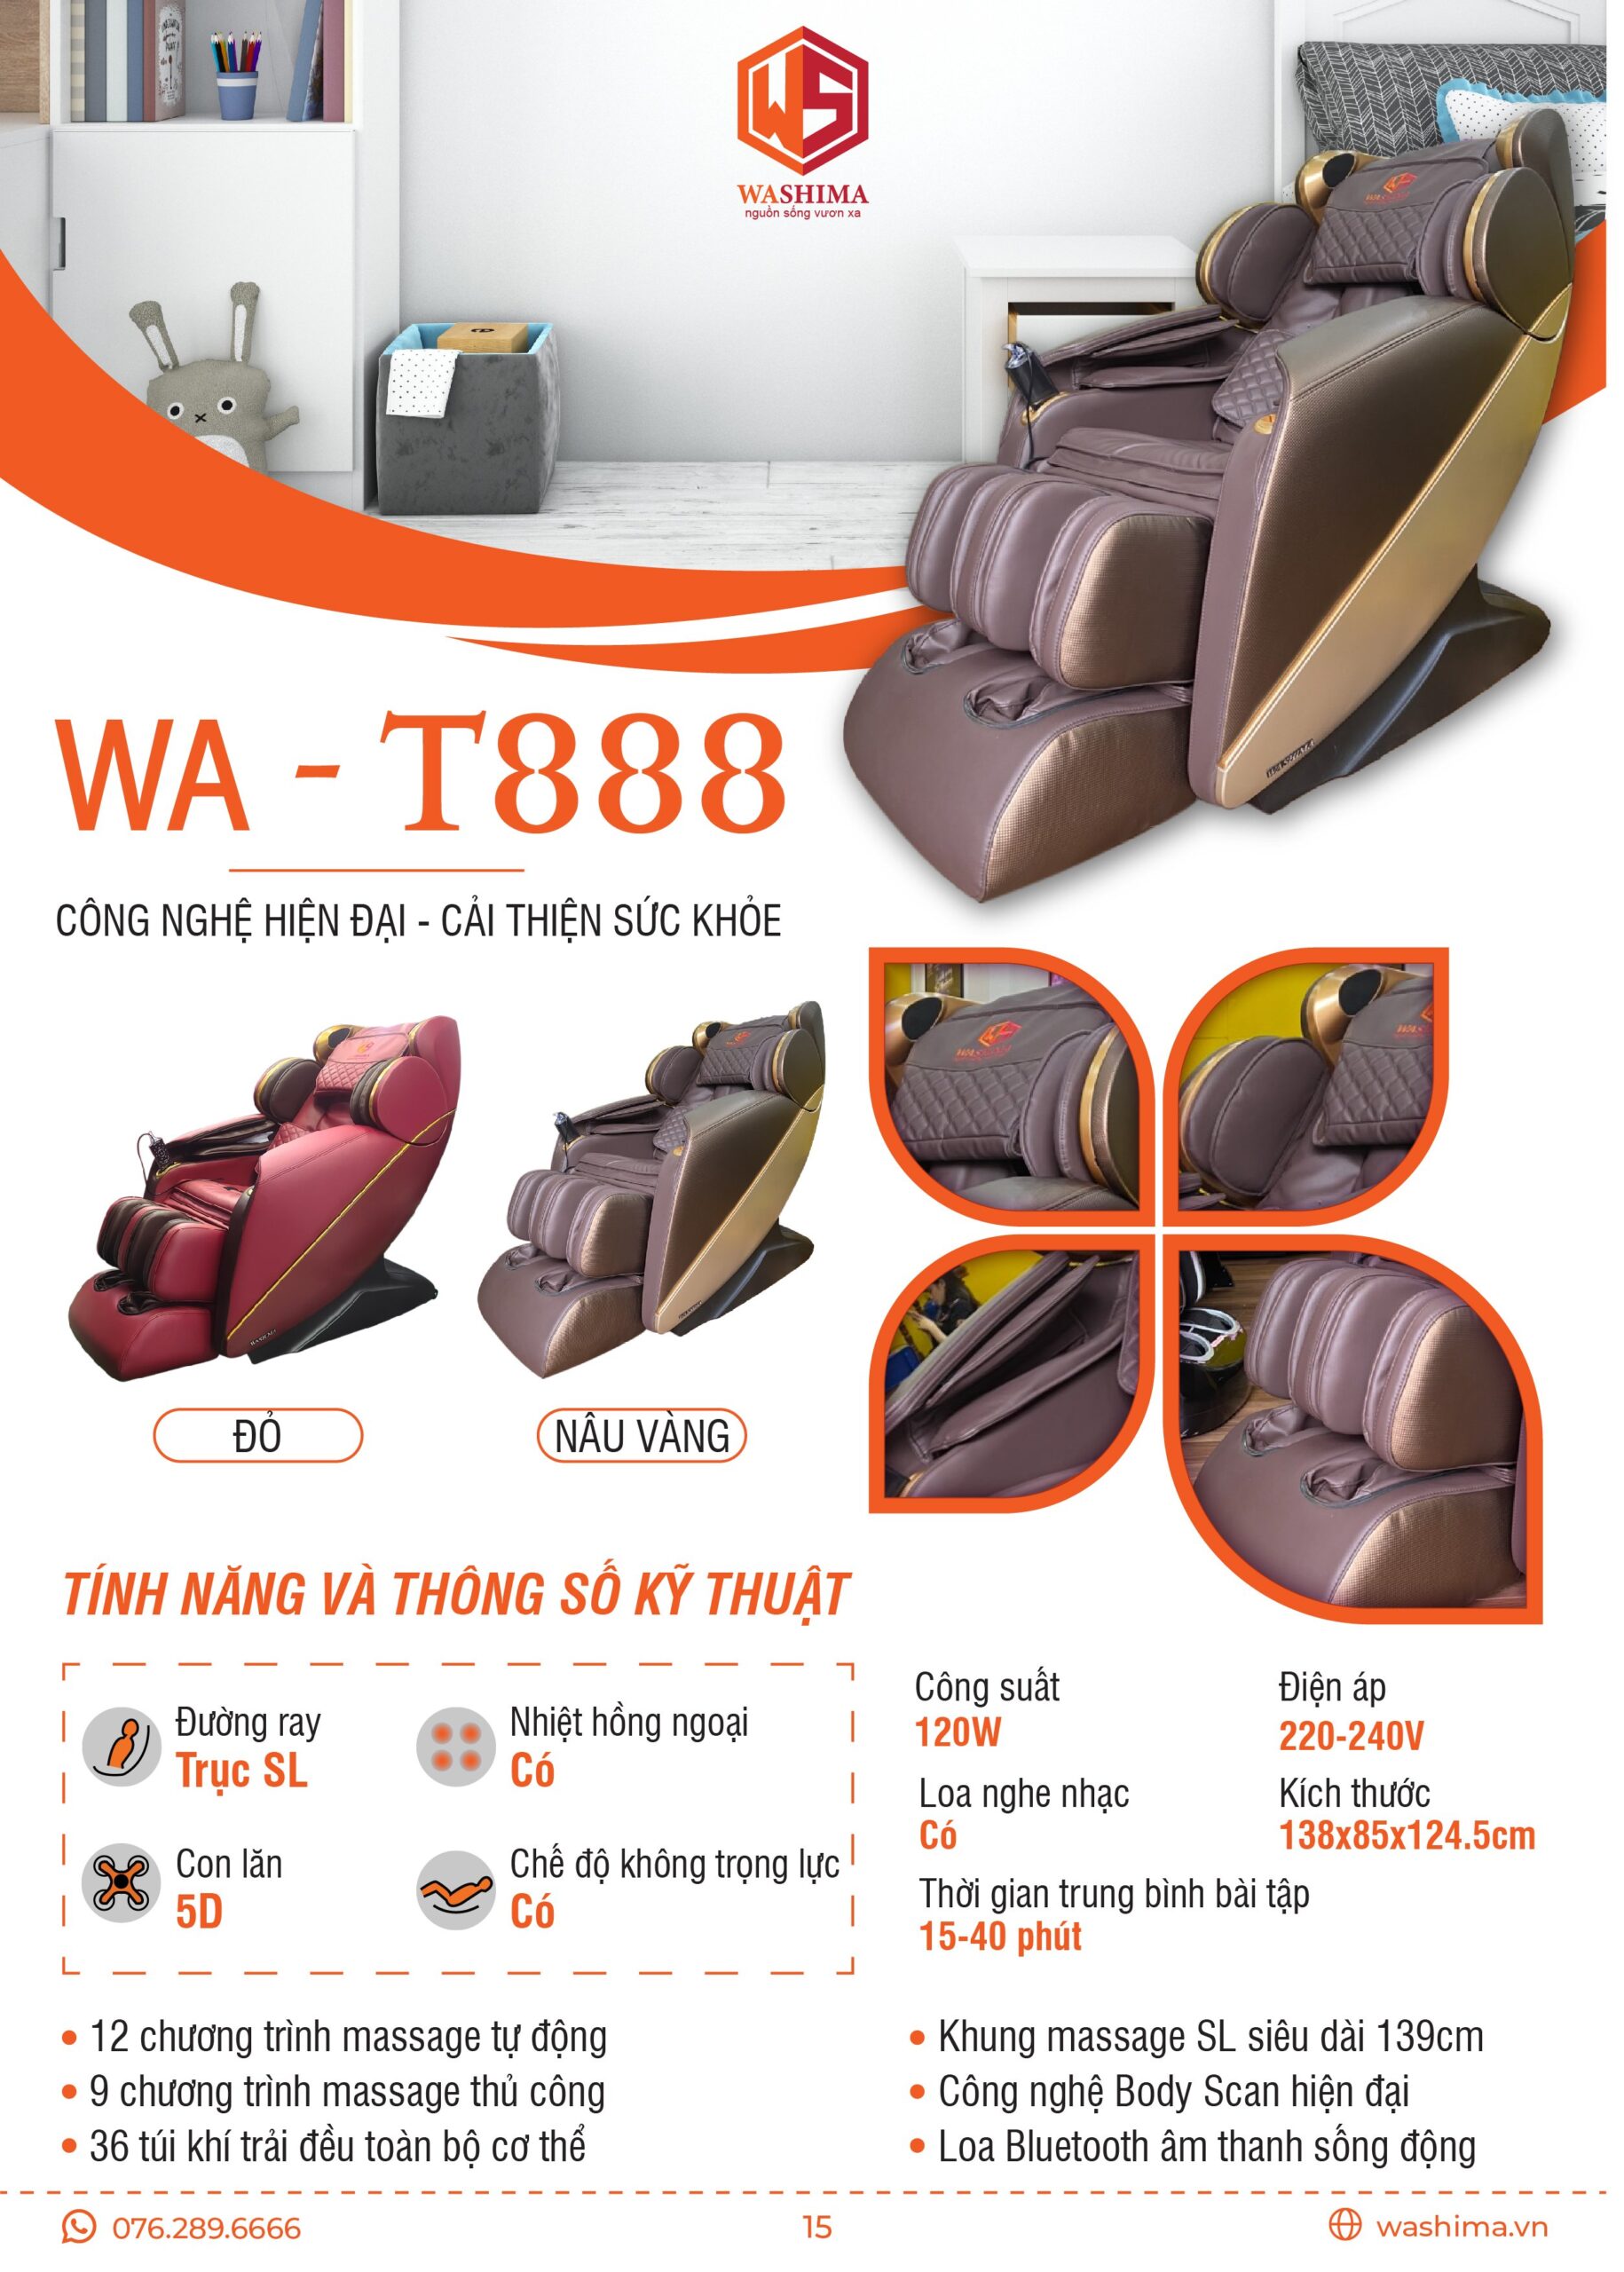 Thông số kỹ thuật của chiếc ghế massage Washima WA-T888